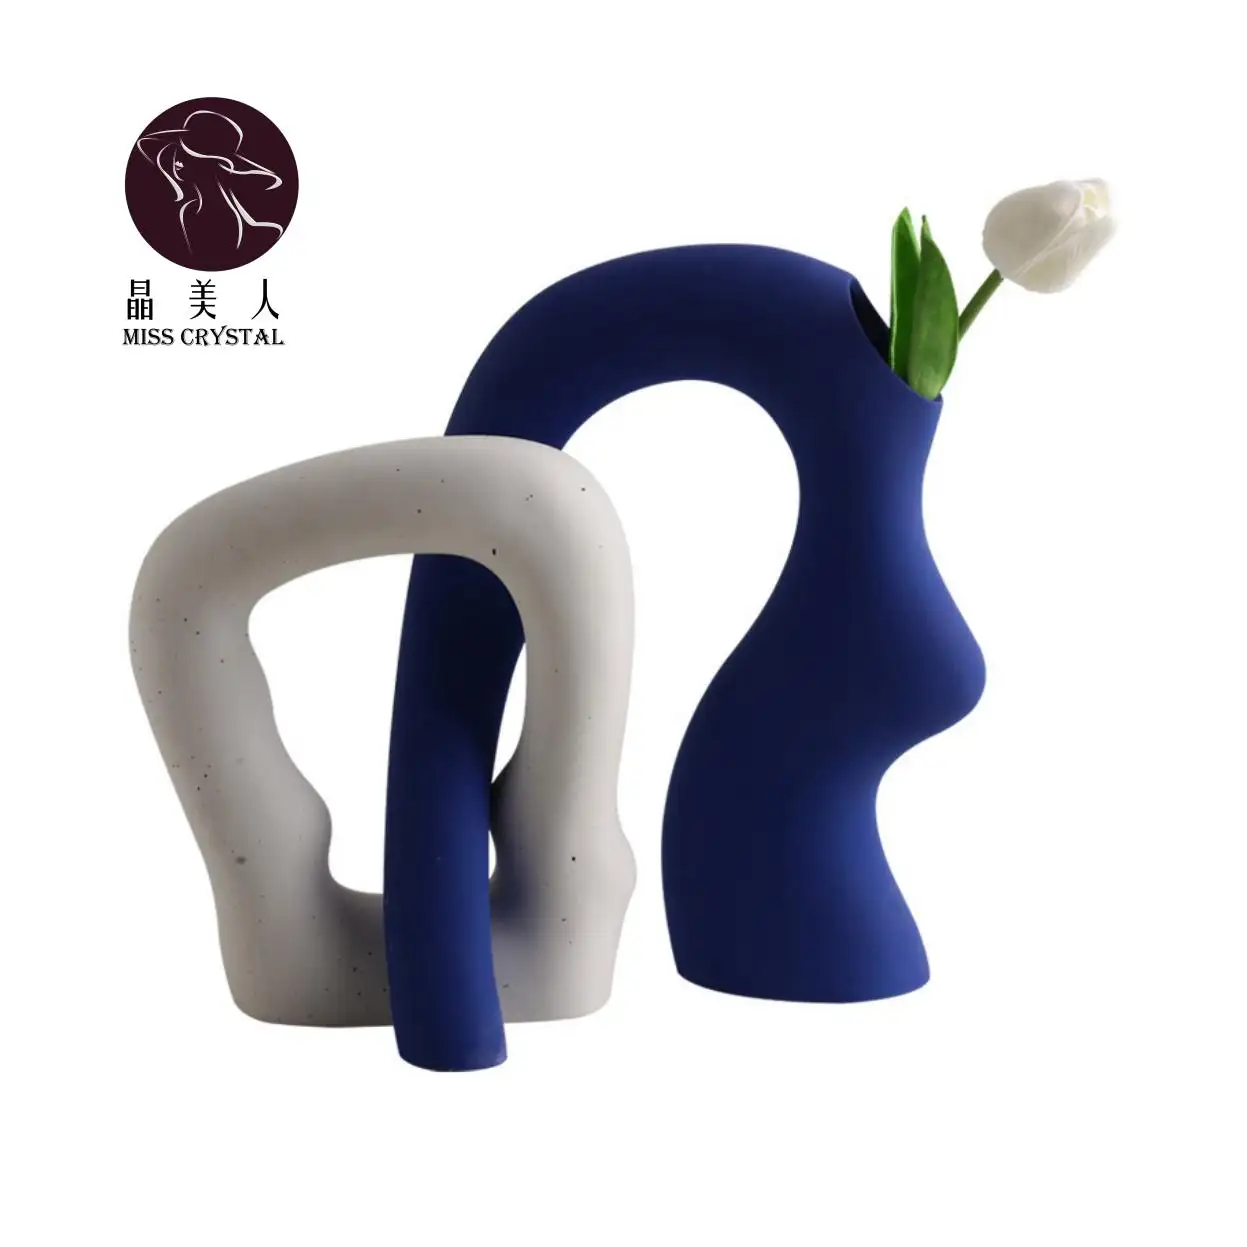 लक्जरी मिट्टी के नॉर्डिक सजावट Vases के आंतरिक सामान विशेष आकार गहने फूलदान सेट 2